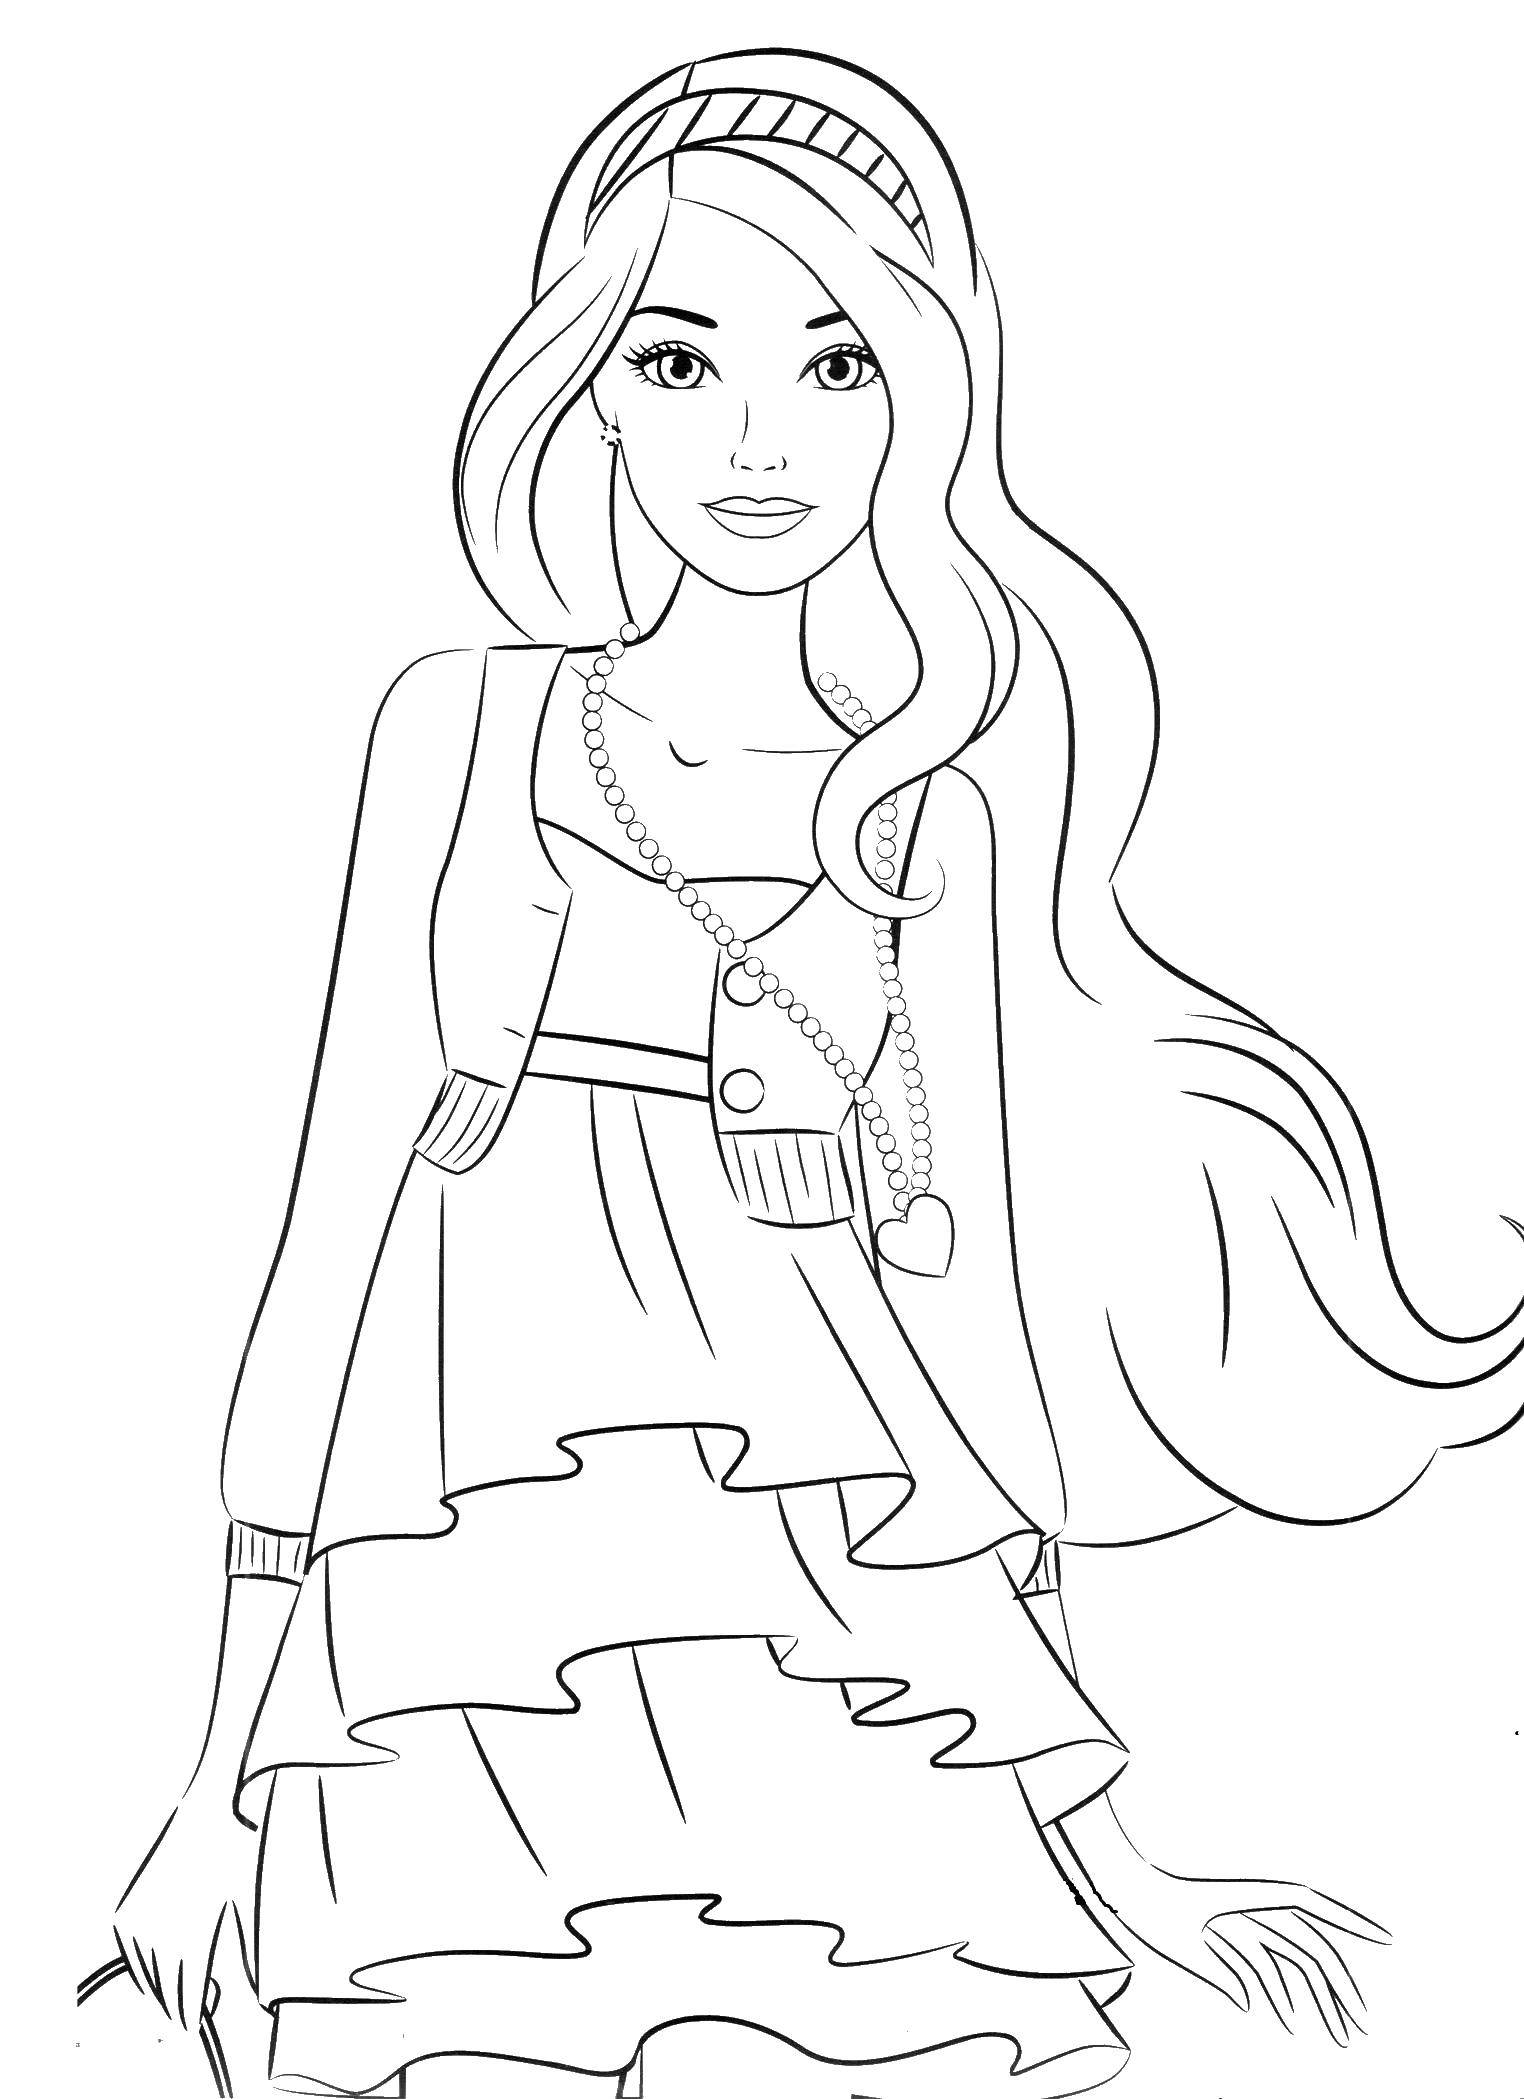 Раскраски с барби по серии мультфильмов  для девочек  Барби в красивом платье